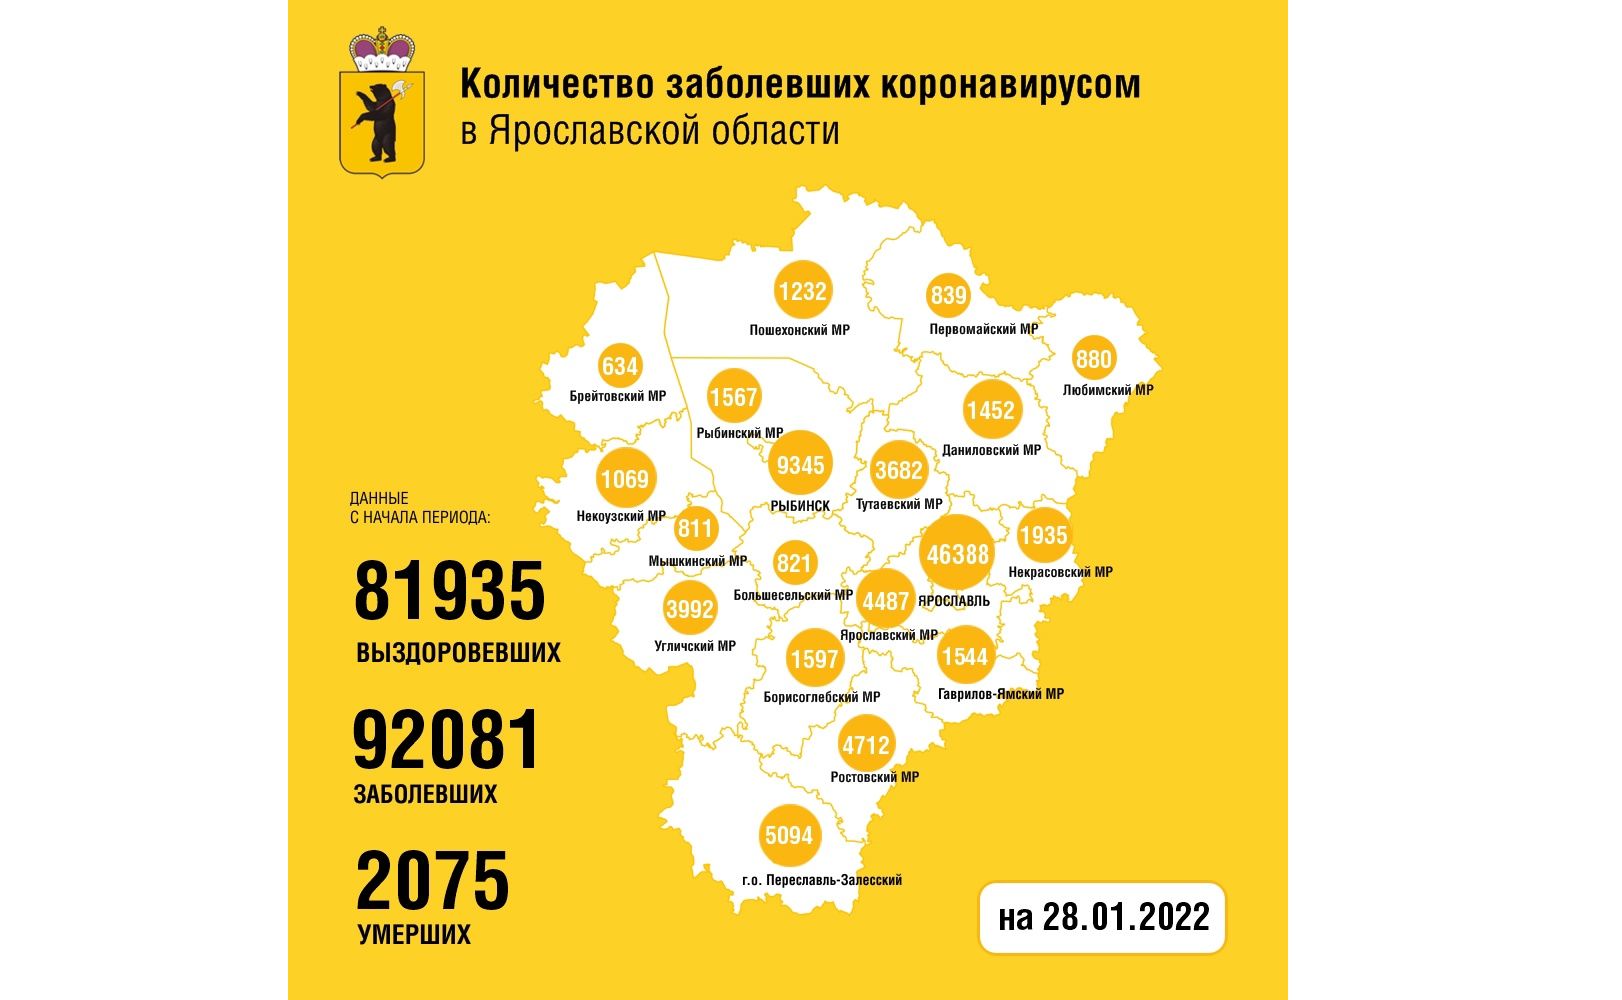 В Ярославской области продолжает расти заболеваемость коронавирусом: установлен новый рекорд